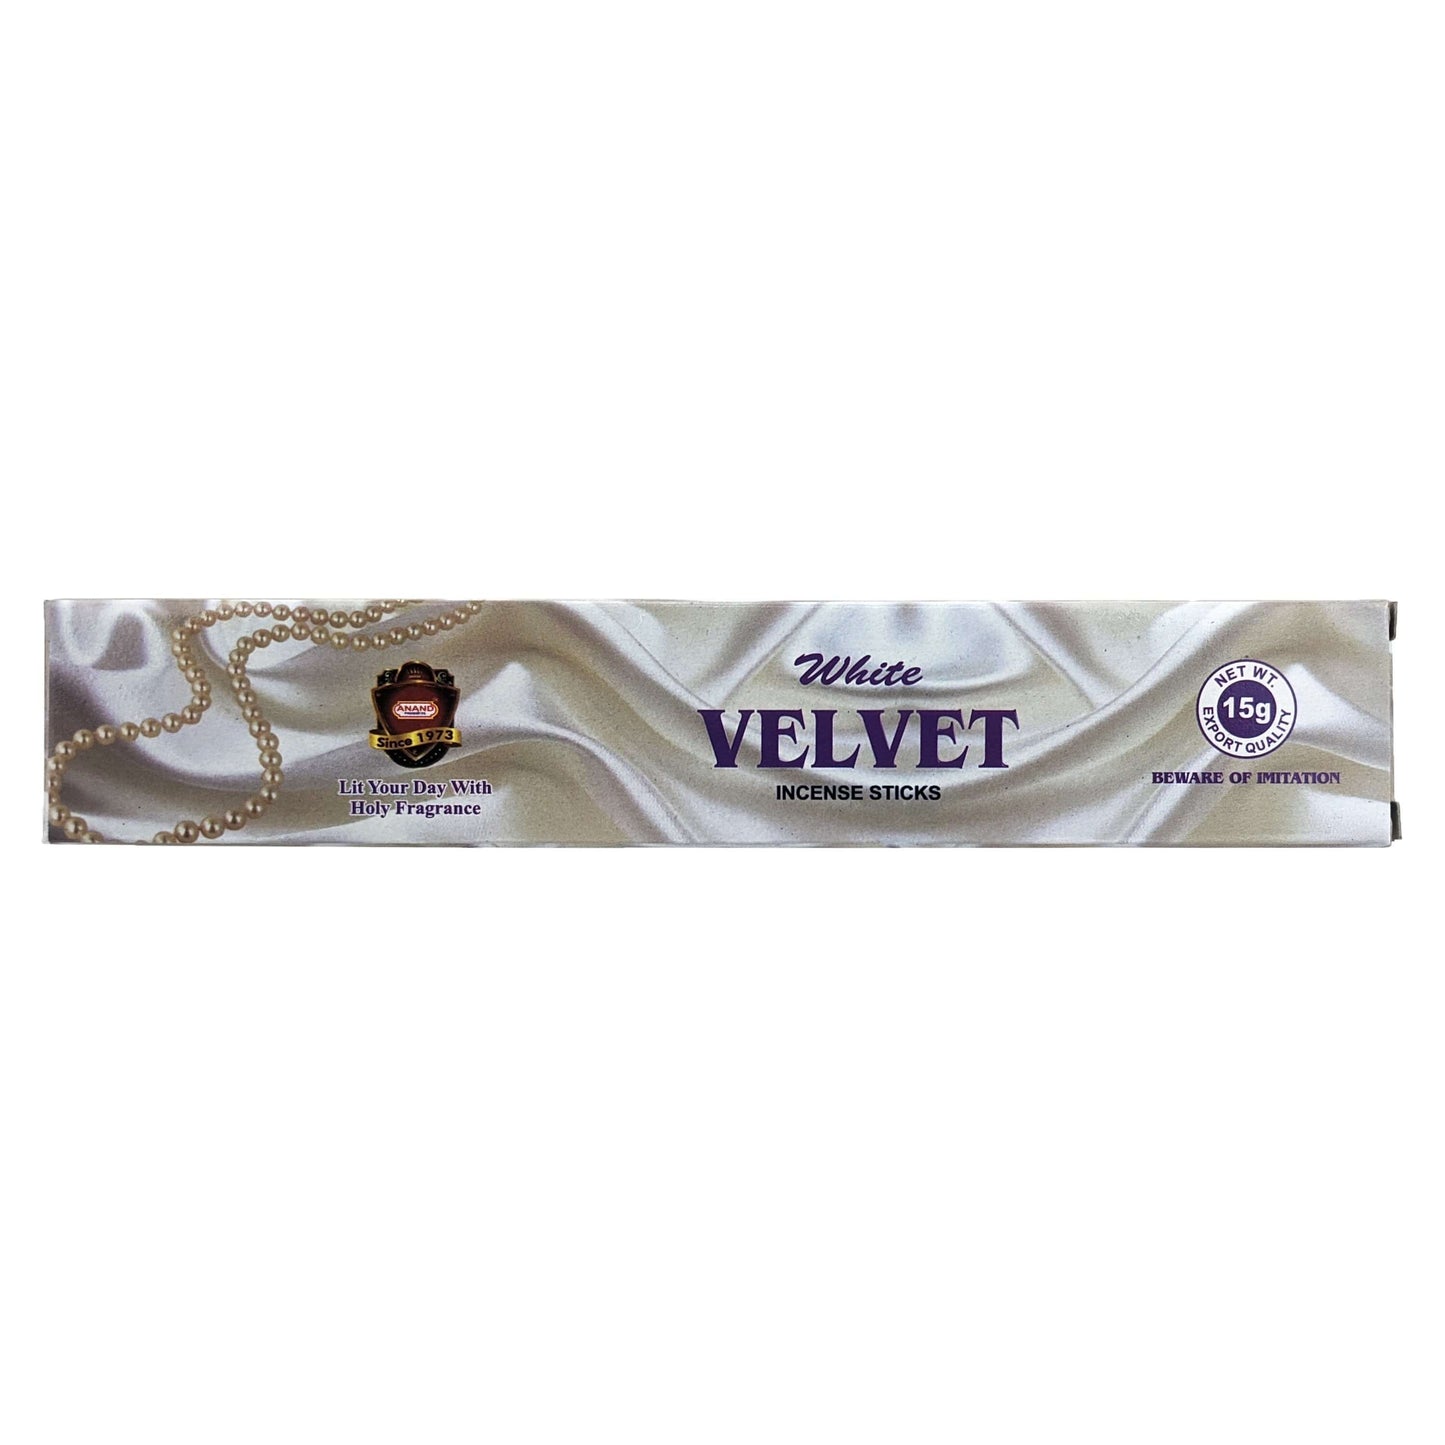 Anand White Velvet Incense Sticks, 15g Pack